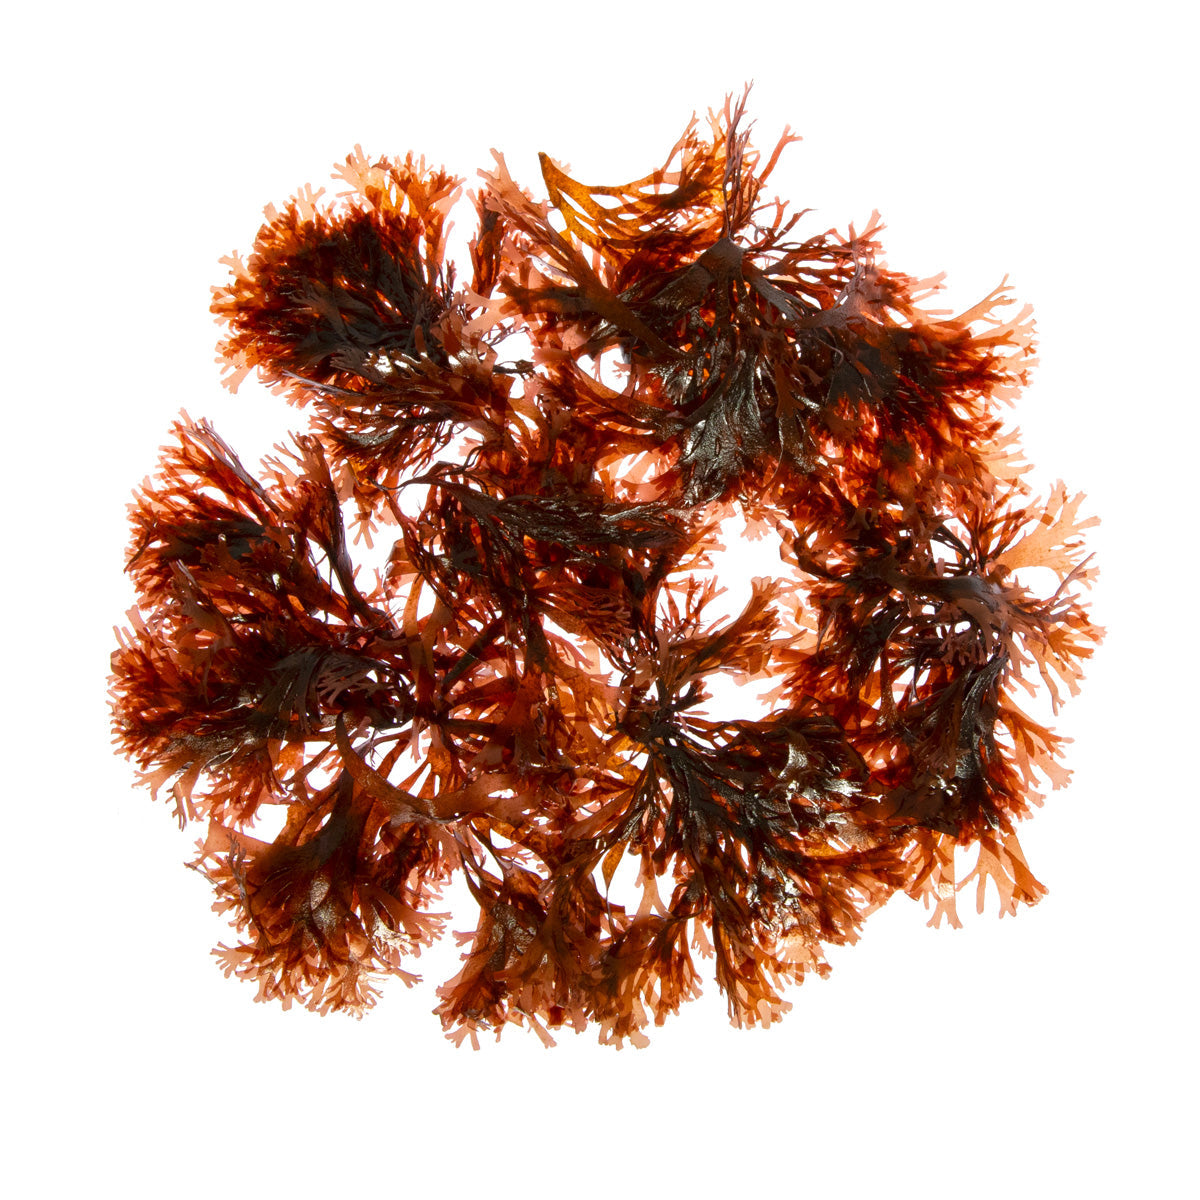 Monterey Bay Seaweed Company Dulse Seaweed